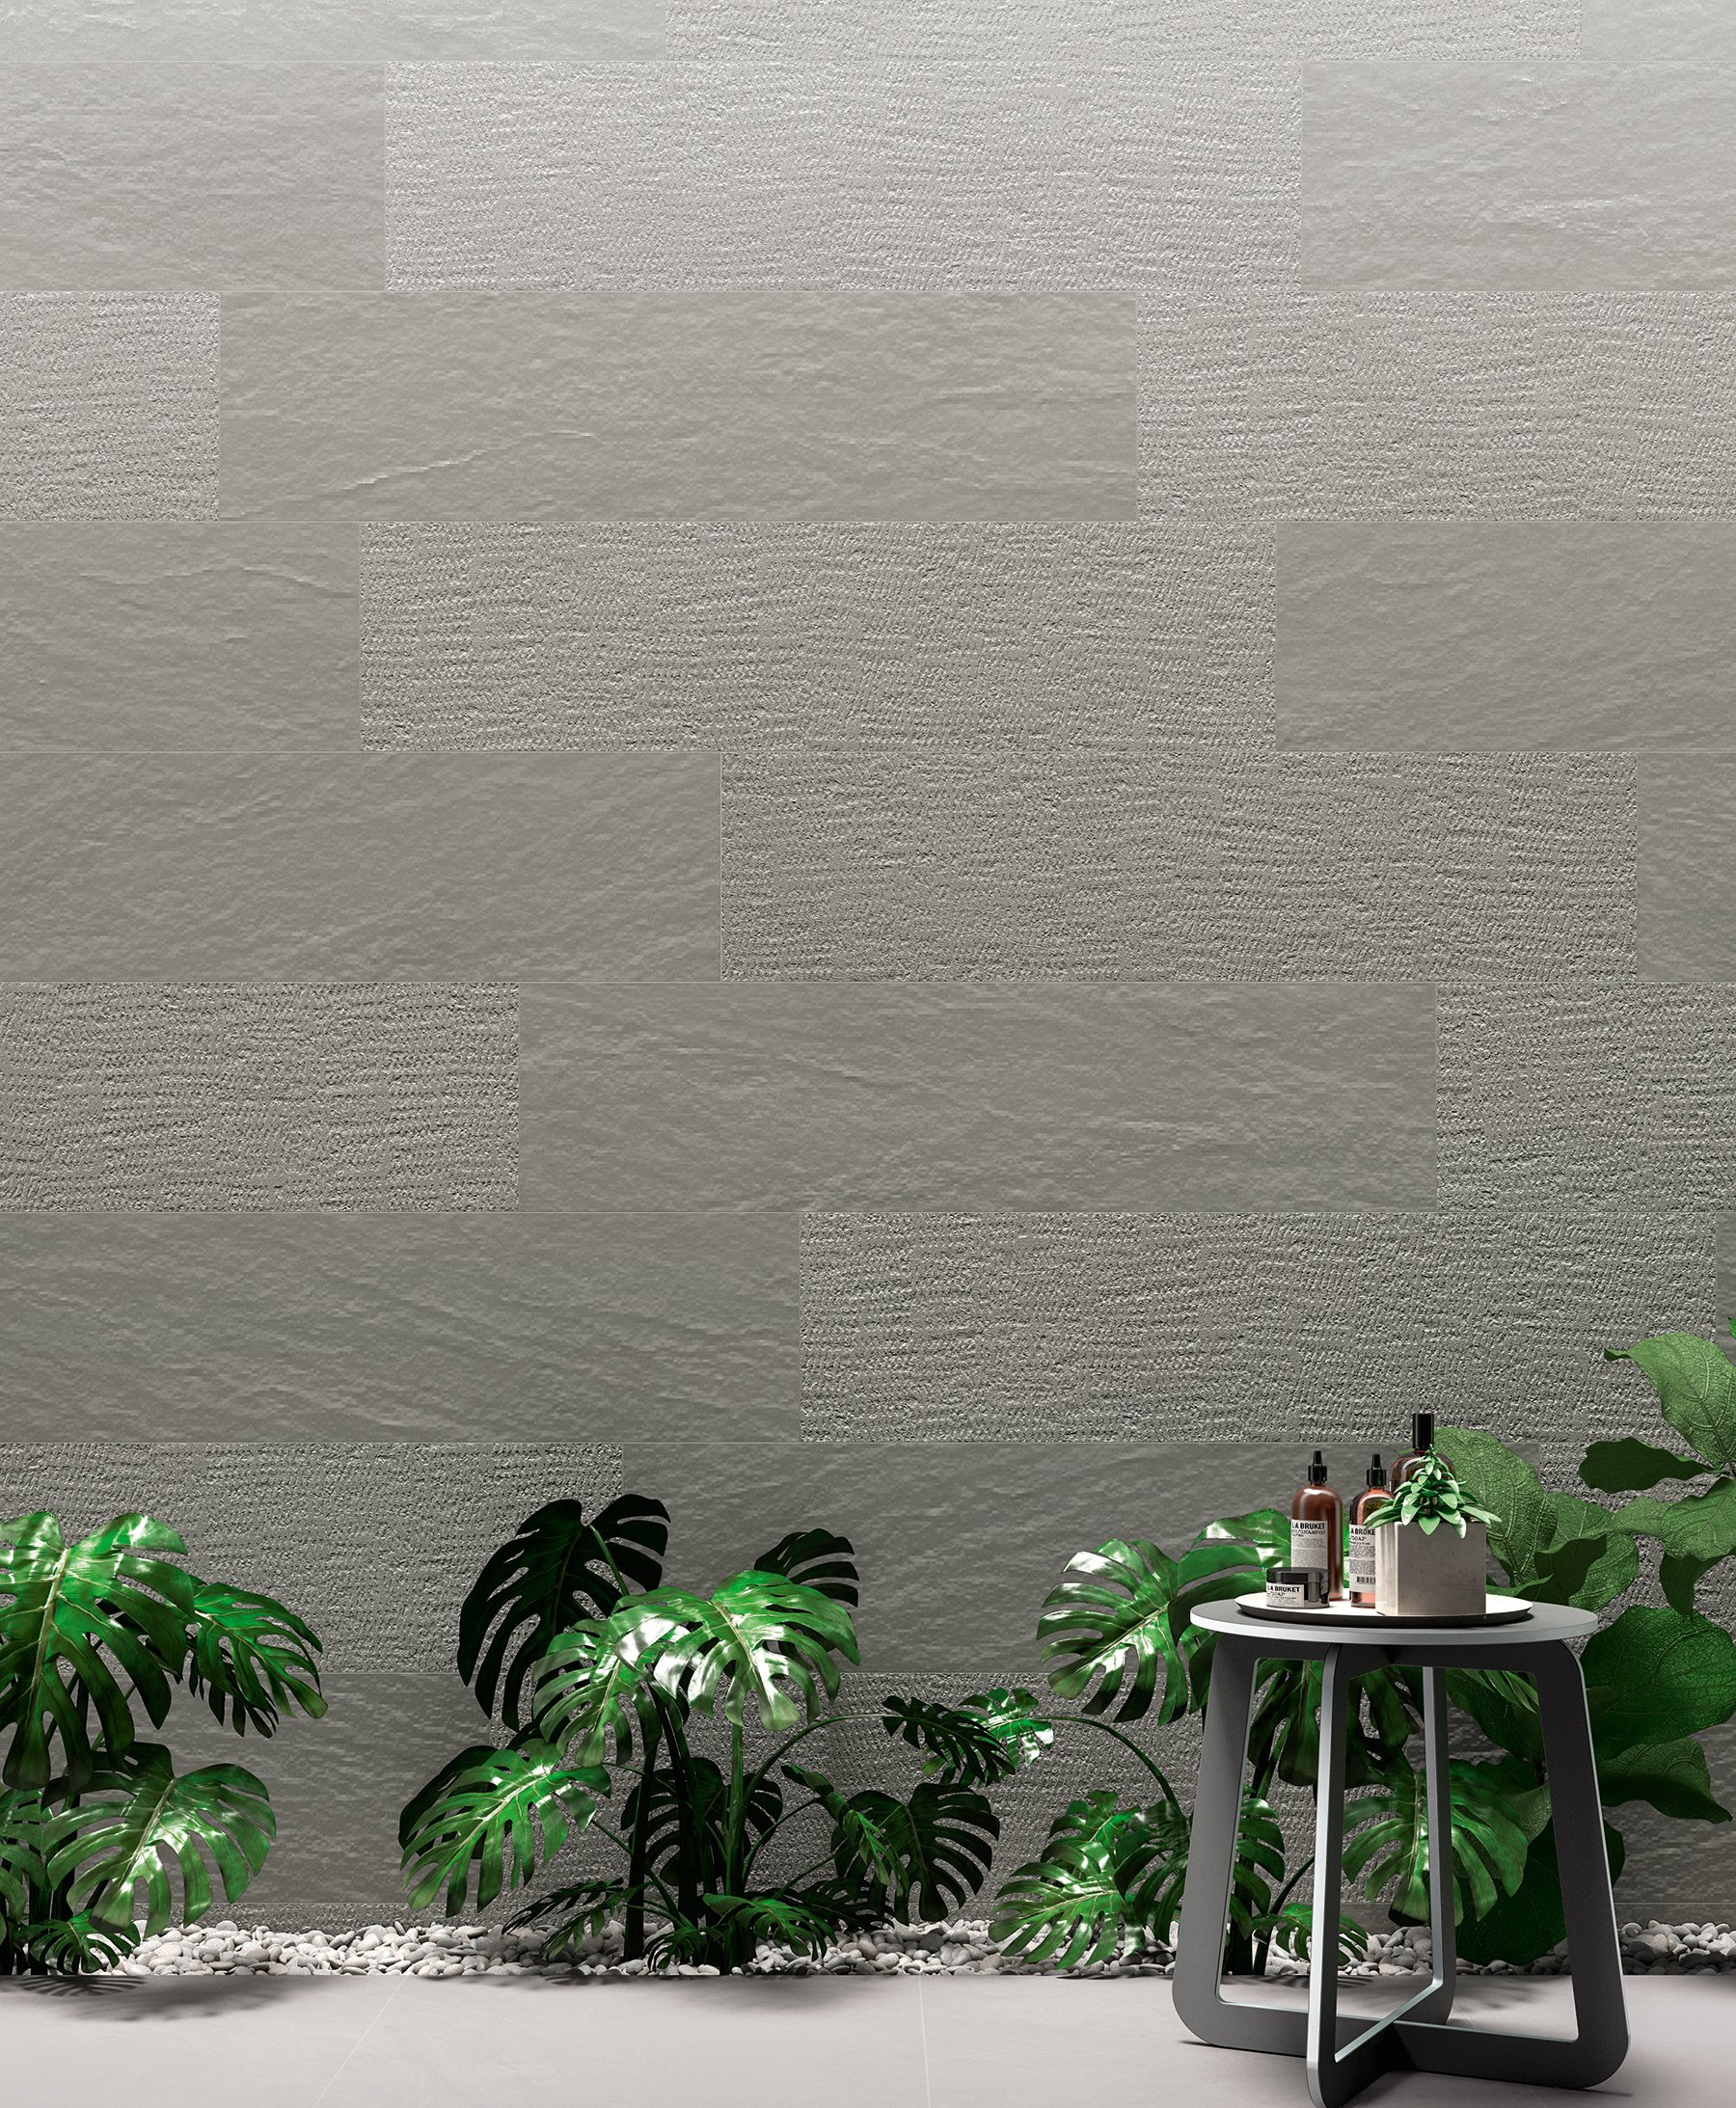 #NovaBell #Norgestone Dark Grey #Obklady a dlažby #Obytné prostory #kámen #mozaika #Naturální styl #šedá #Matná dlažba #1500 a výše #new